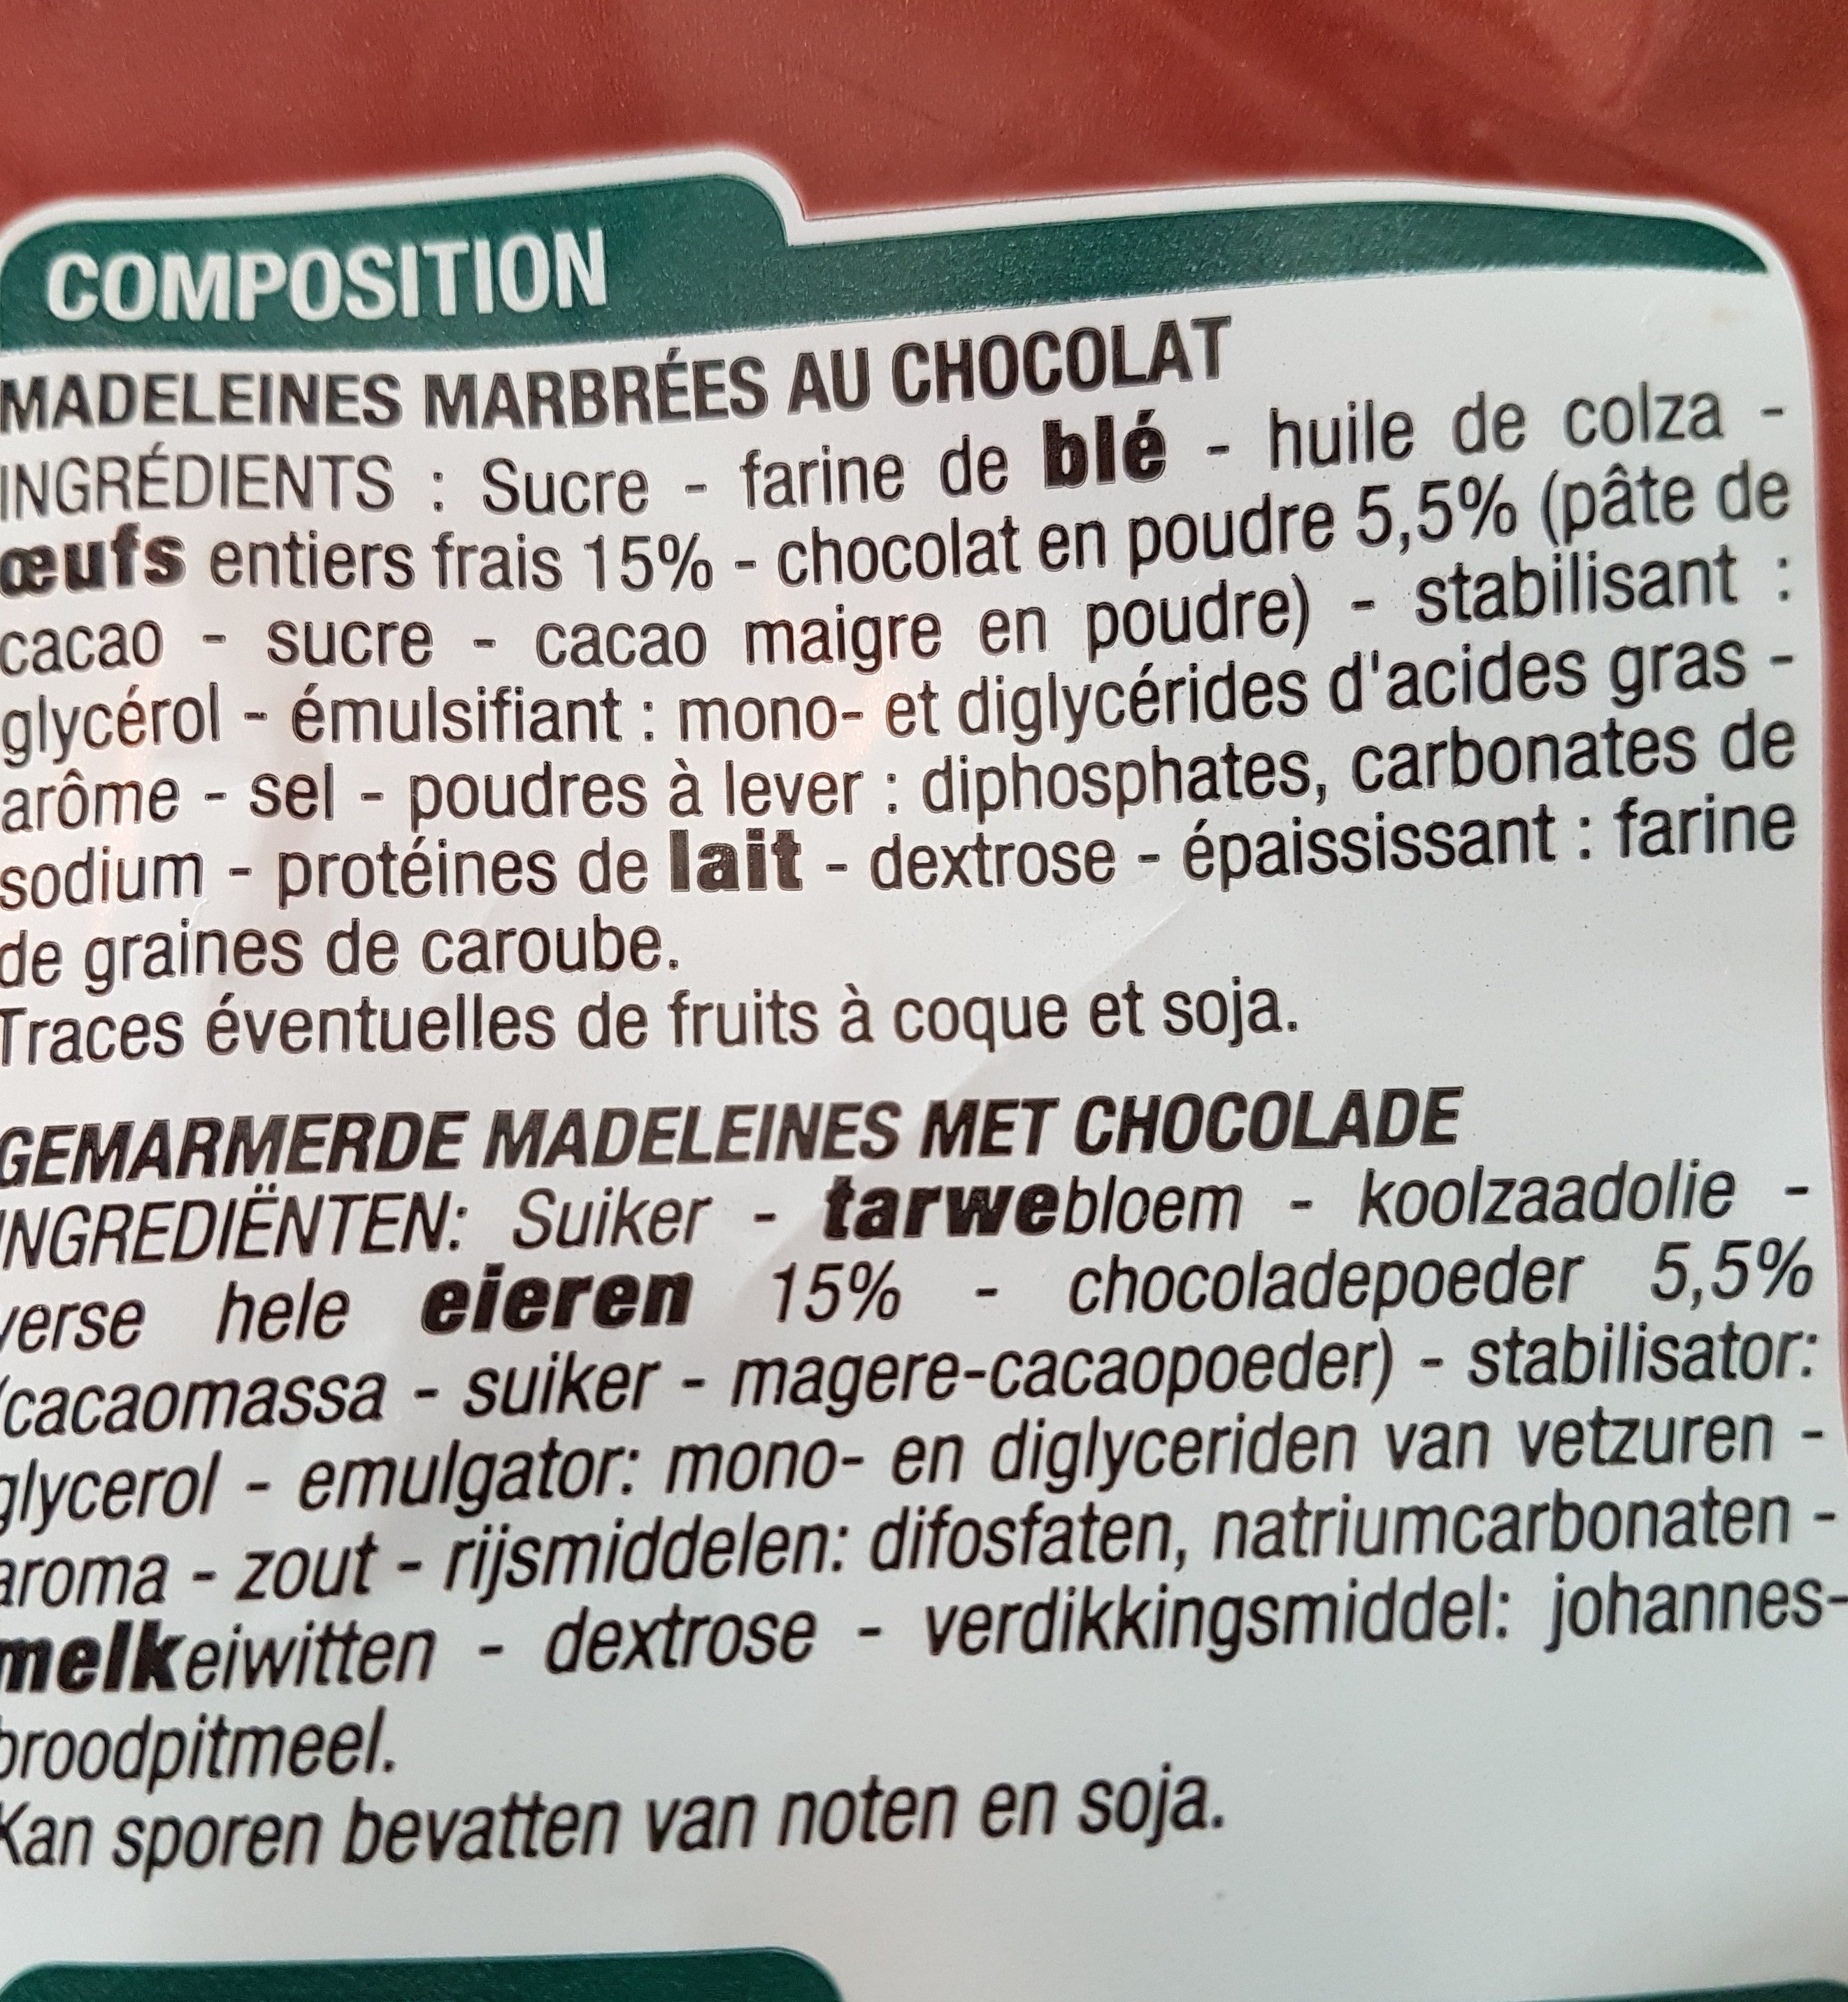 Madeleines marbrées - Ingredients - fr